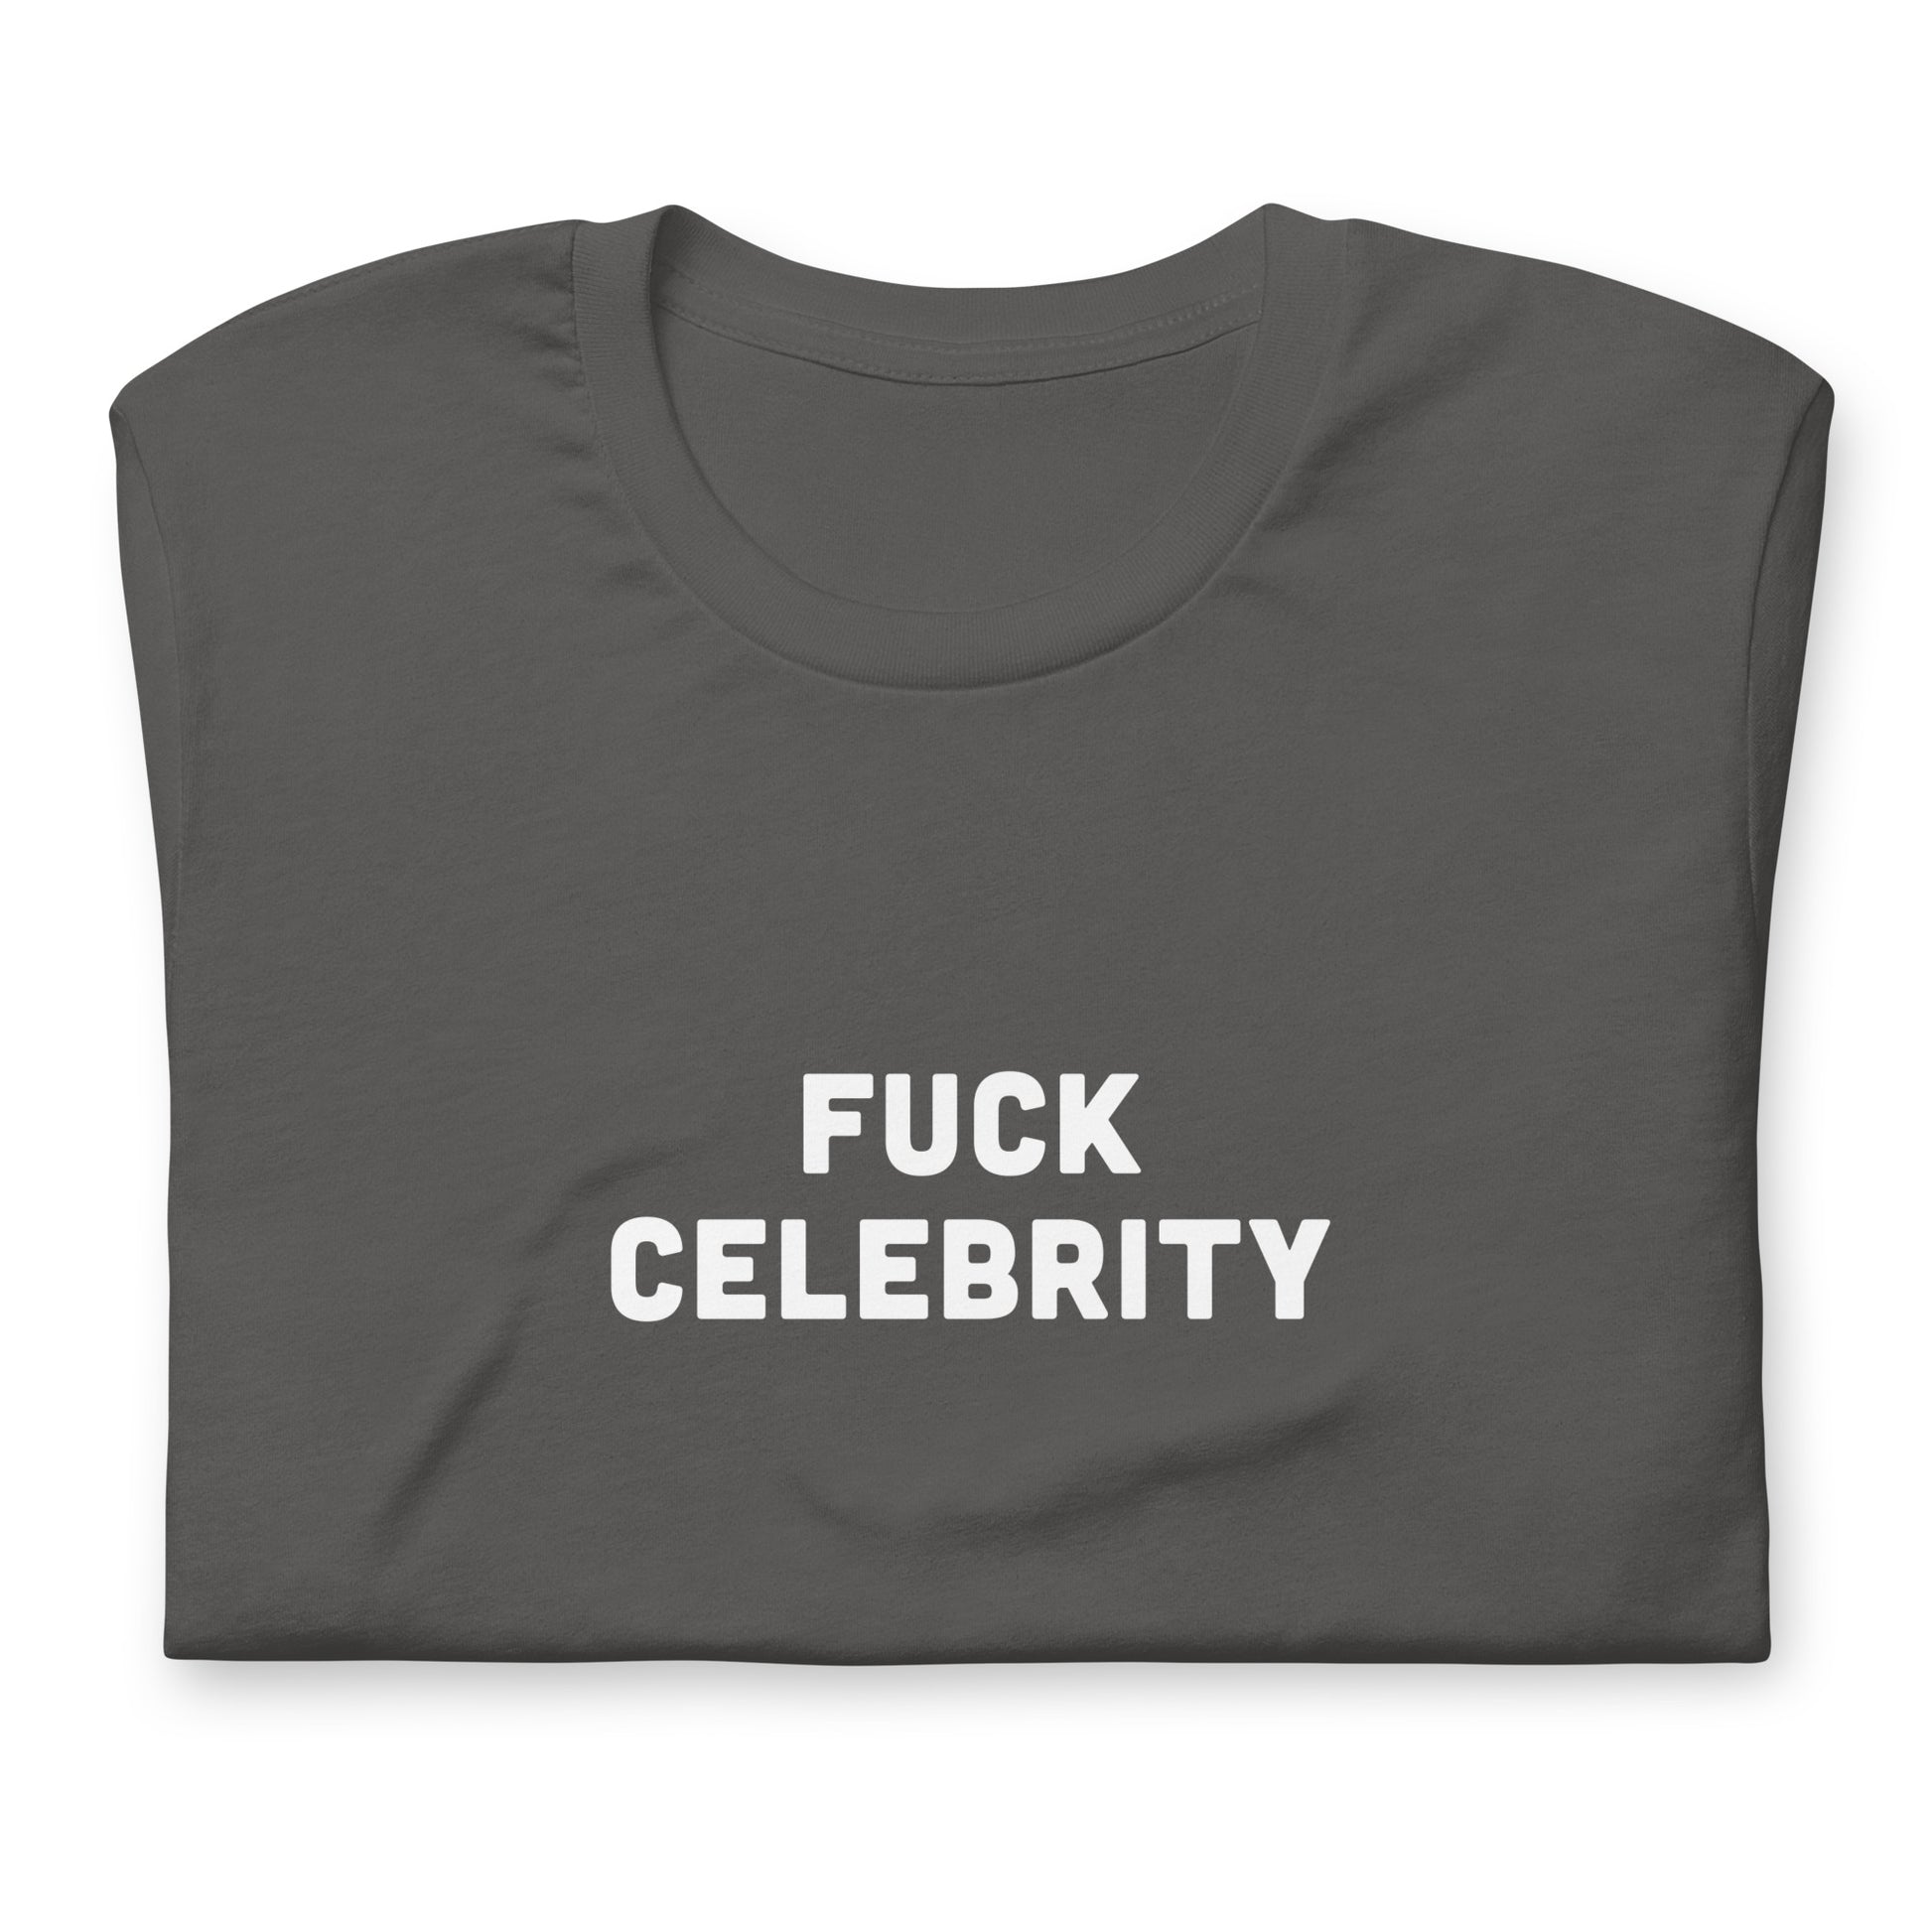 Fuck Celebrity T-Shirt Size 2XL Color Black